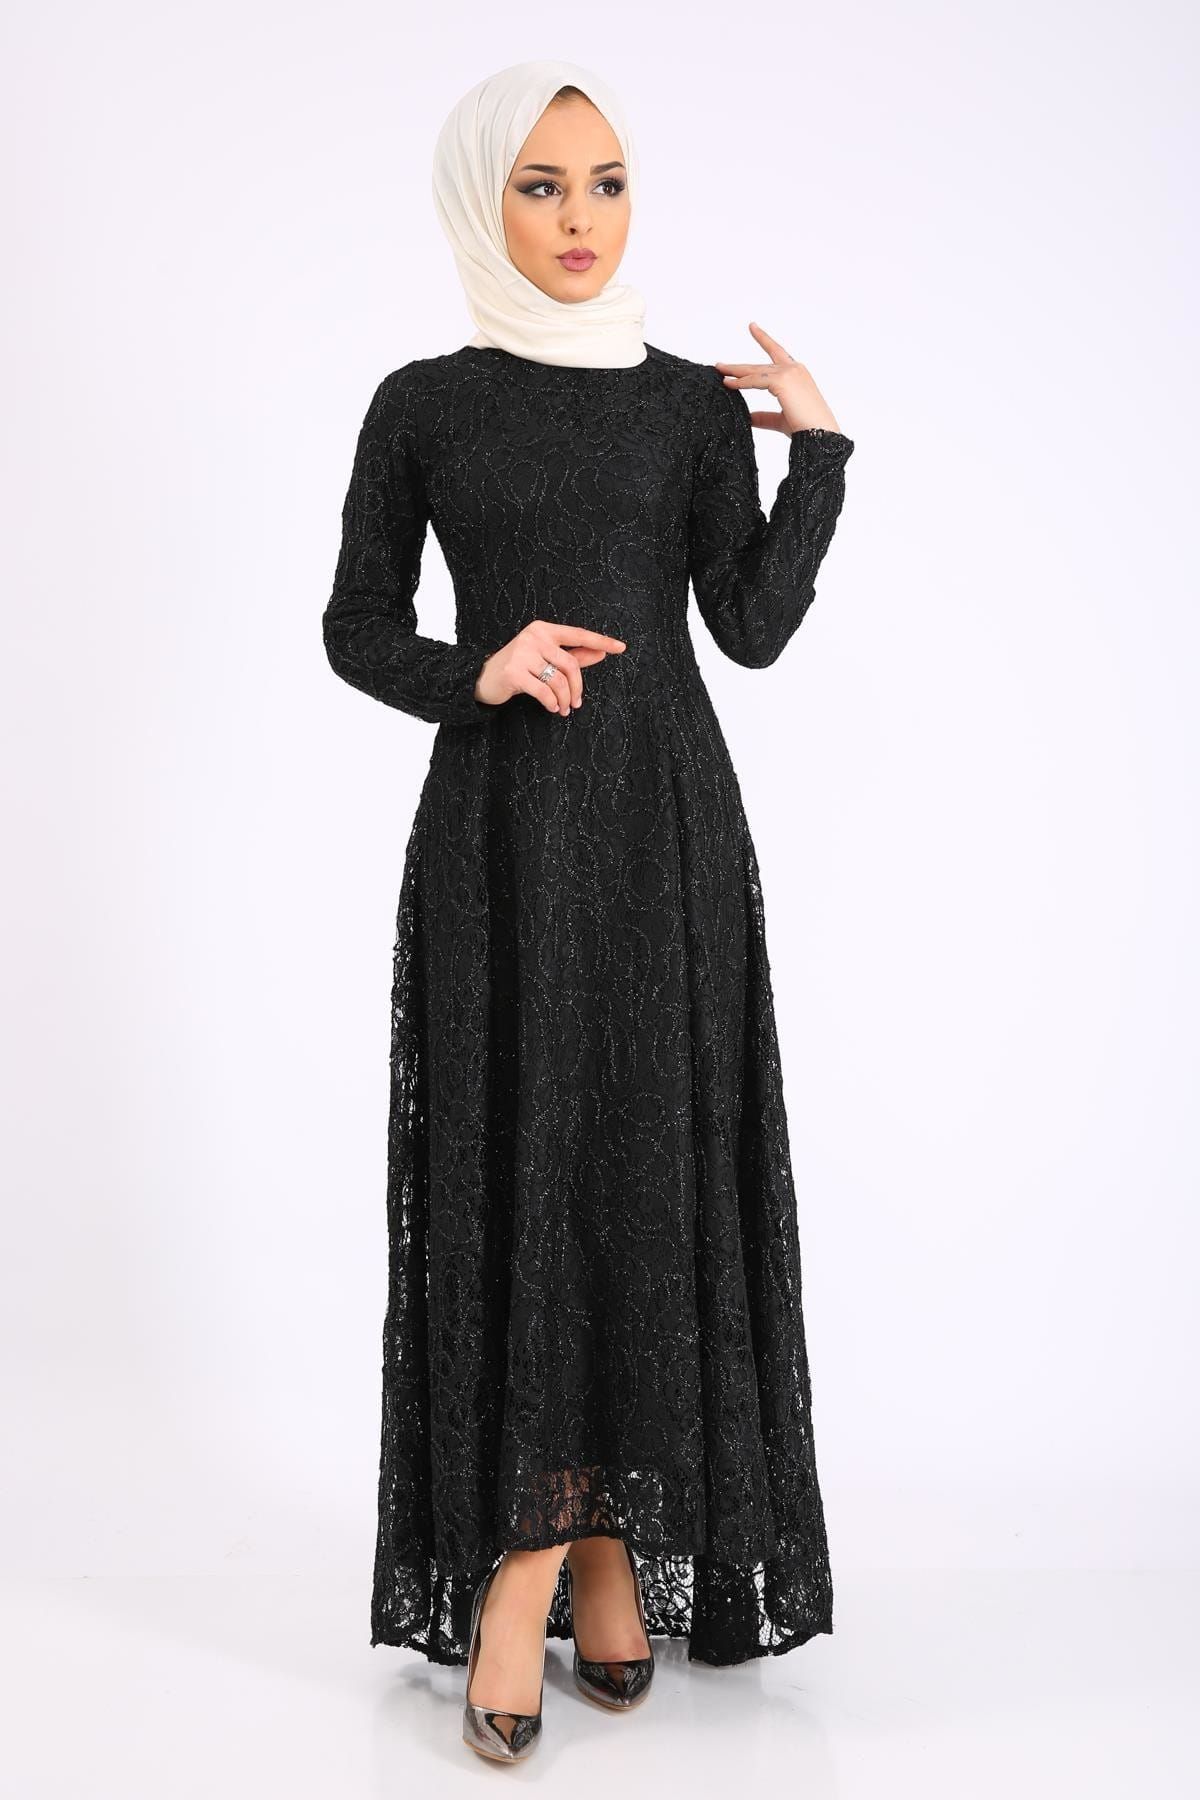 Puane Kadın Siyah Elbise 1204200010